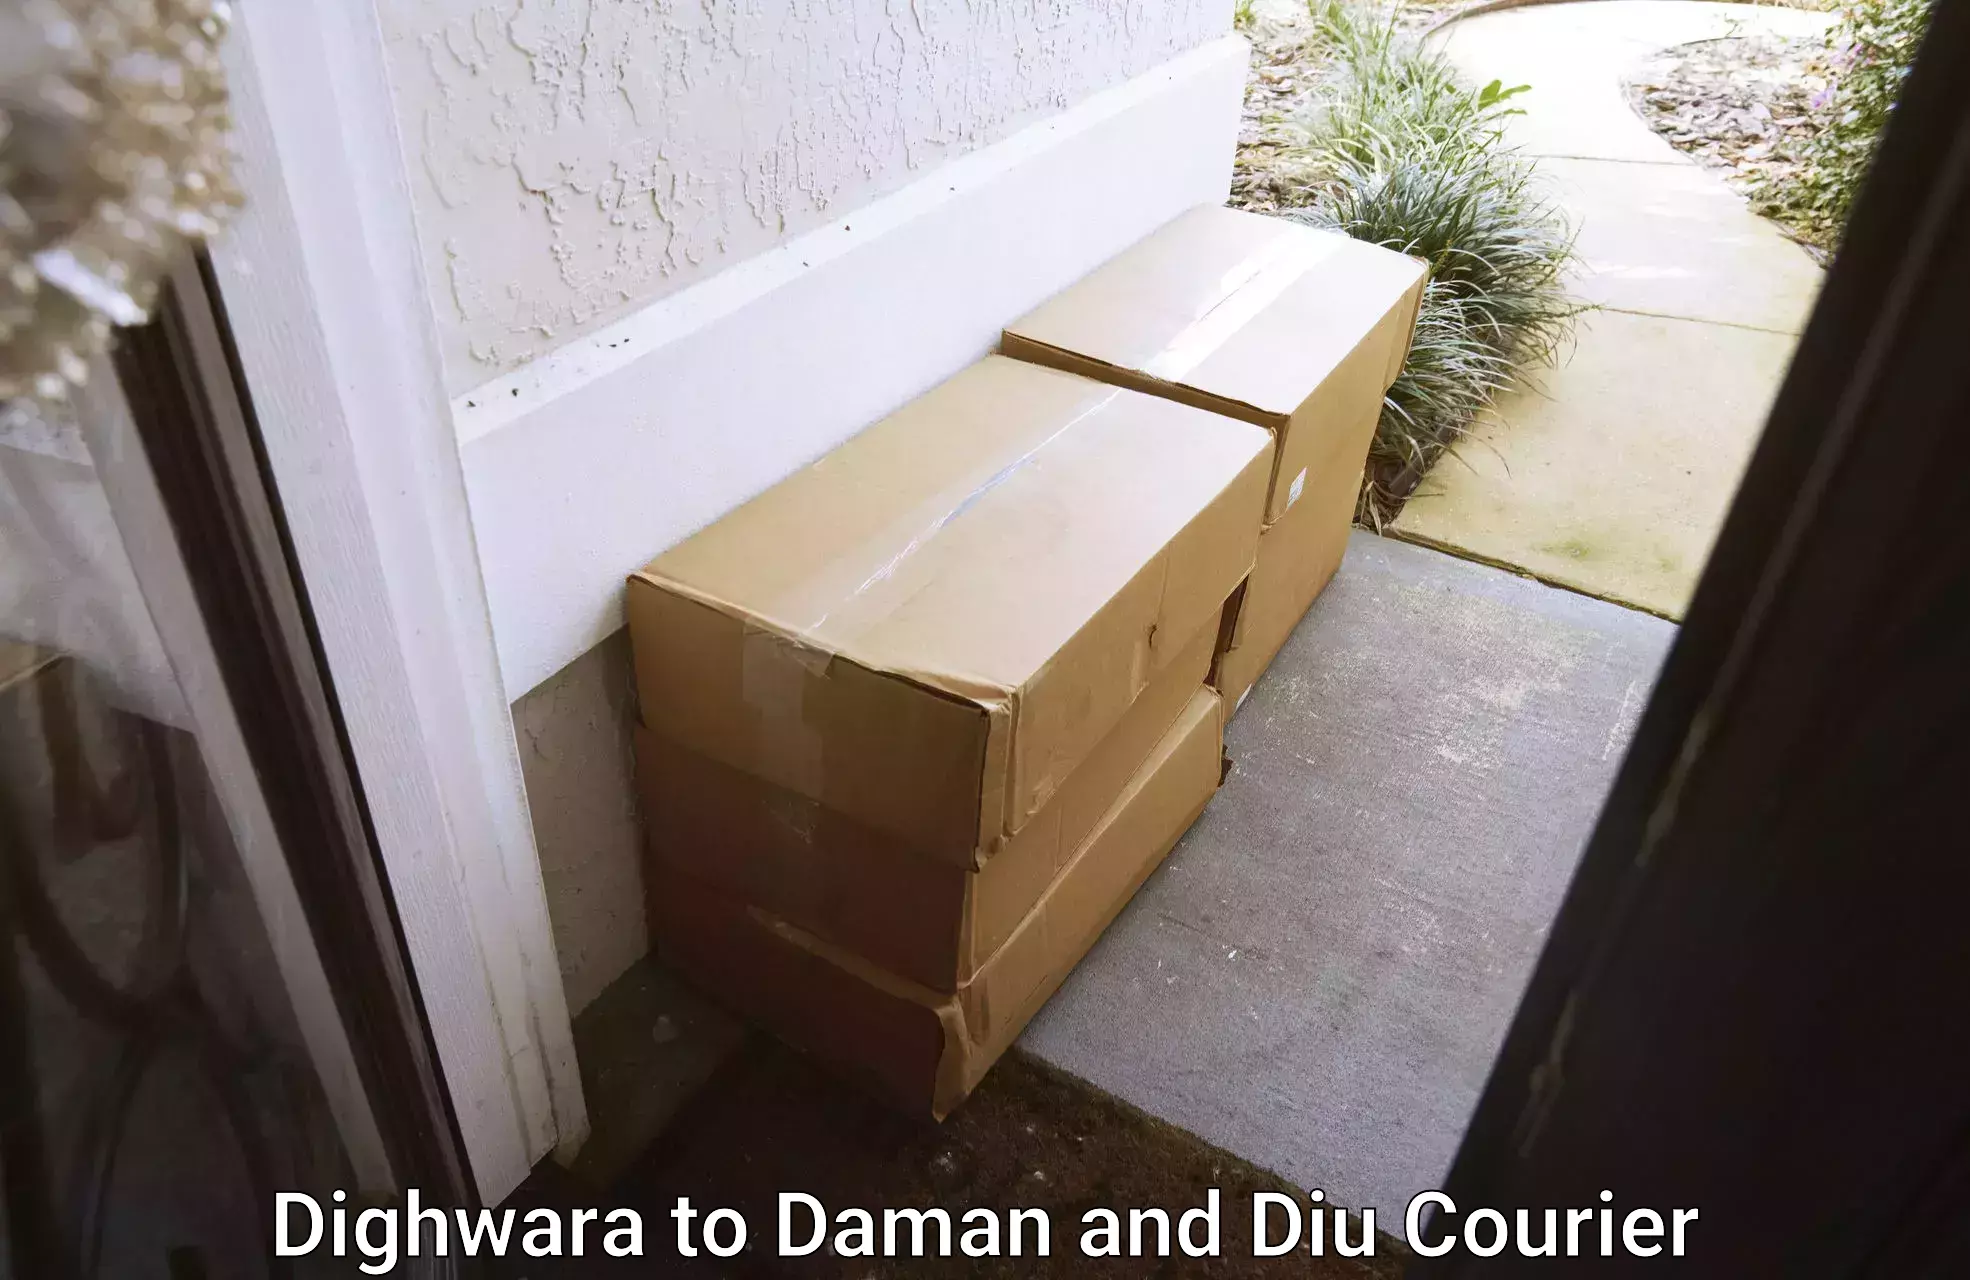 Home goods transport Dighwara to Daman and Diu